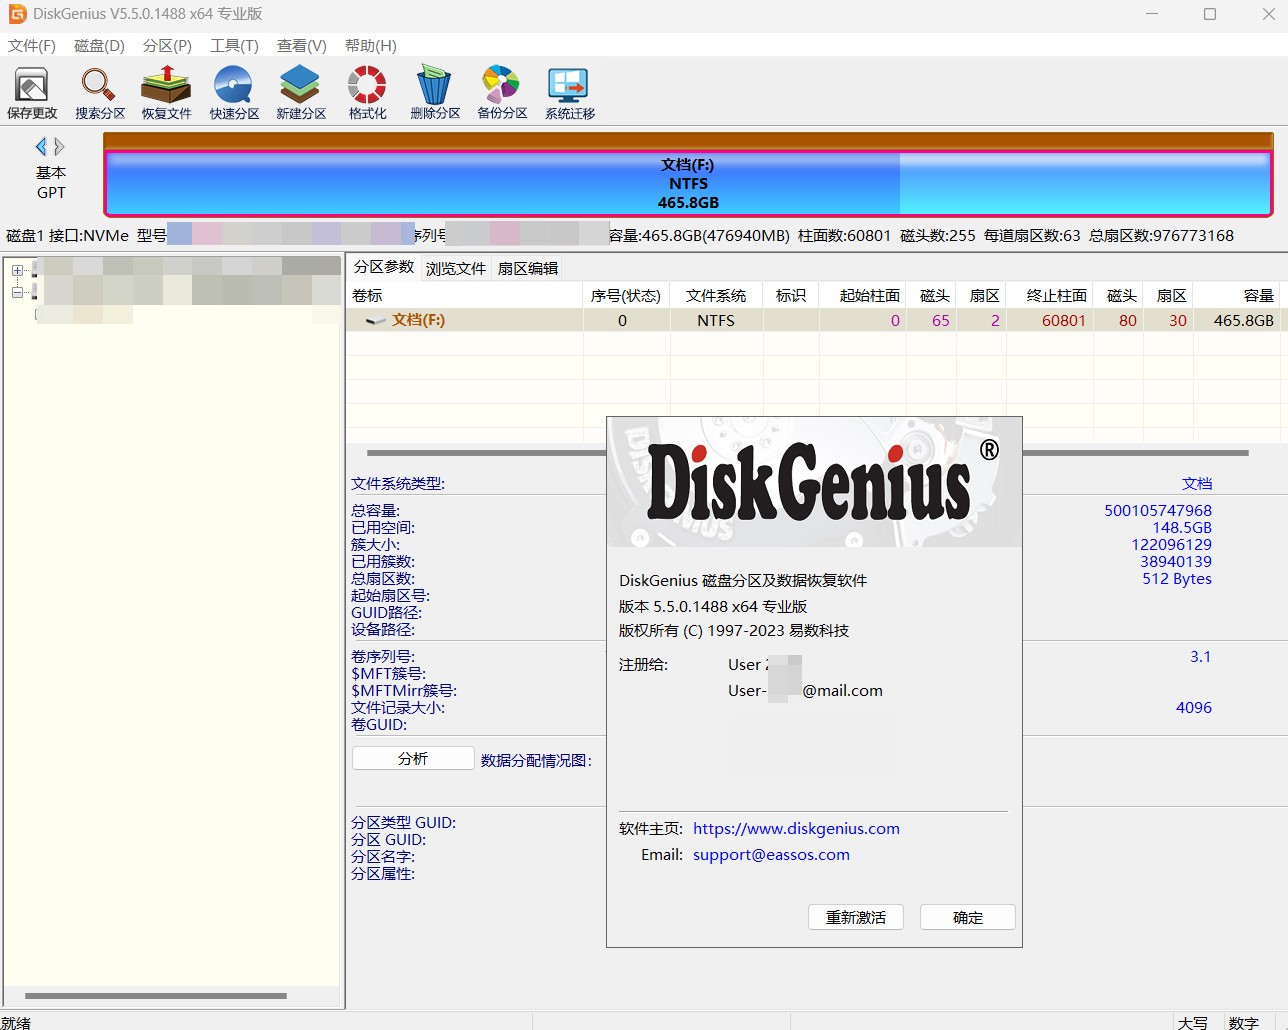 磁盘管理软件工具 DiskGenius Professional 5.5.0.1488 中文汉化特殊解密版